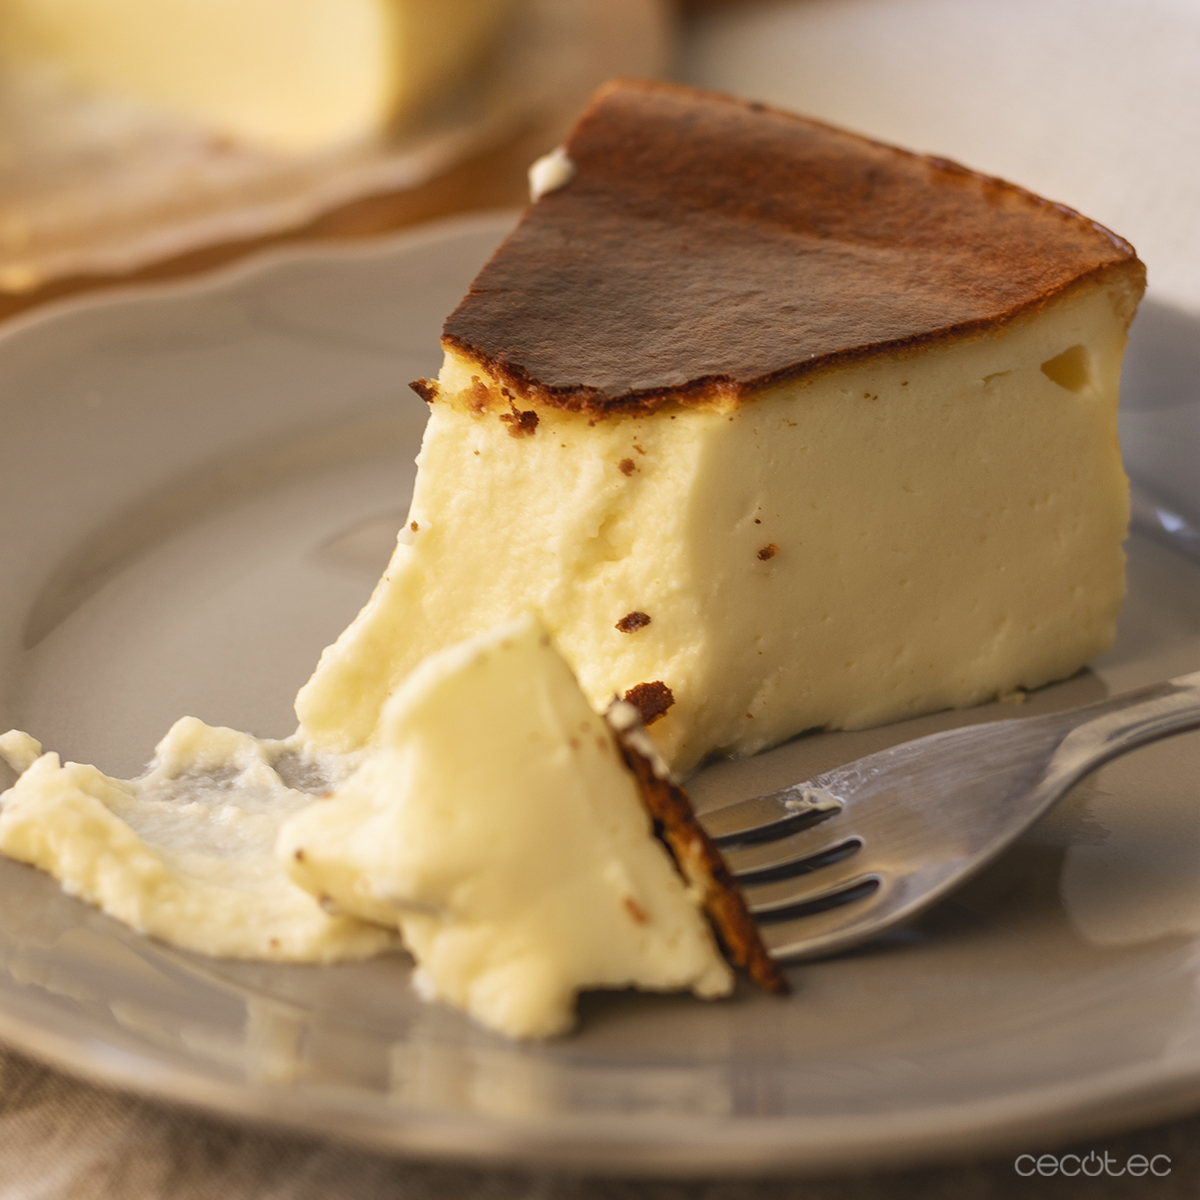 Tarta de queso con chocolate blanco en Cecofry - Recetas Cecotec Mambo ·  Cecofry